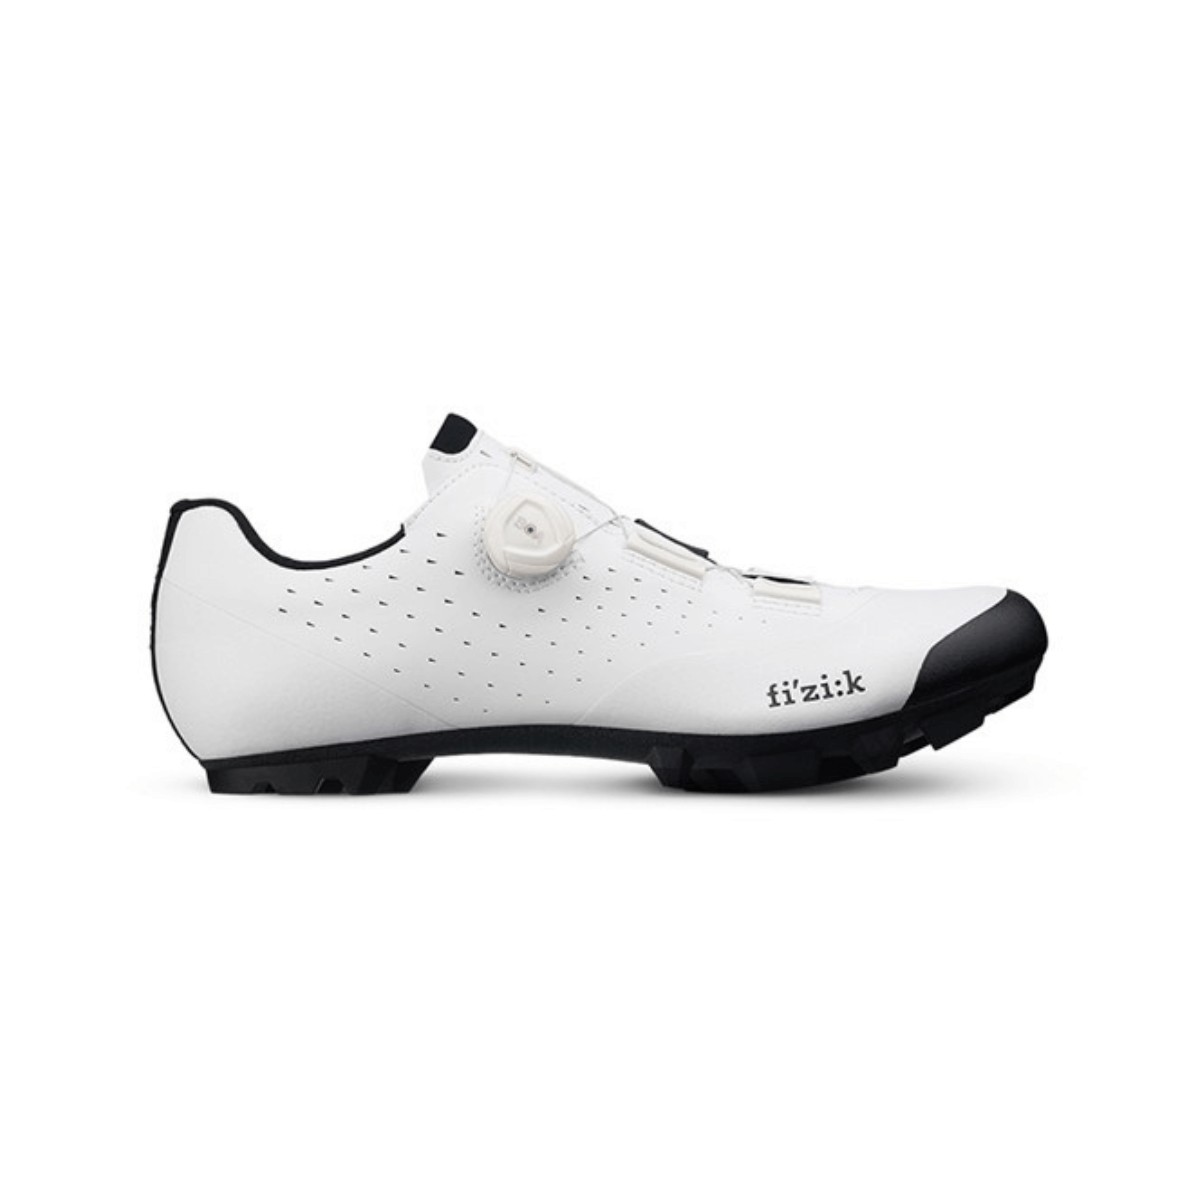 Chaussures Fizik Vento Overcurve X3 Blanc Noir, Taille 41 - EUR